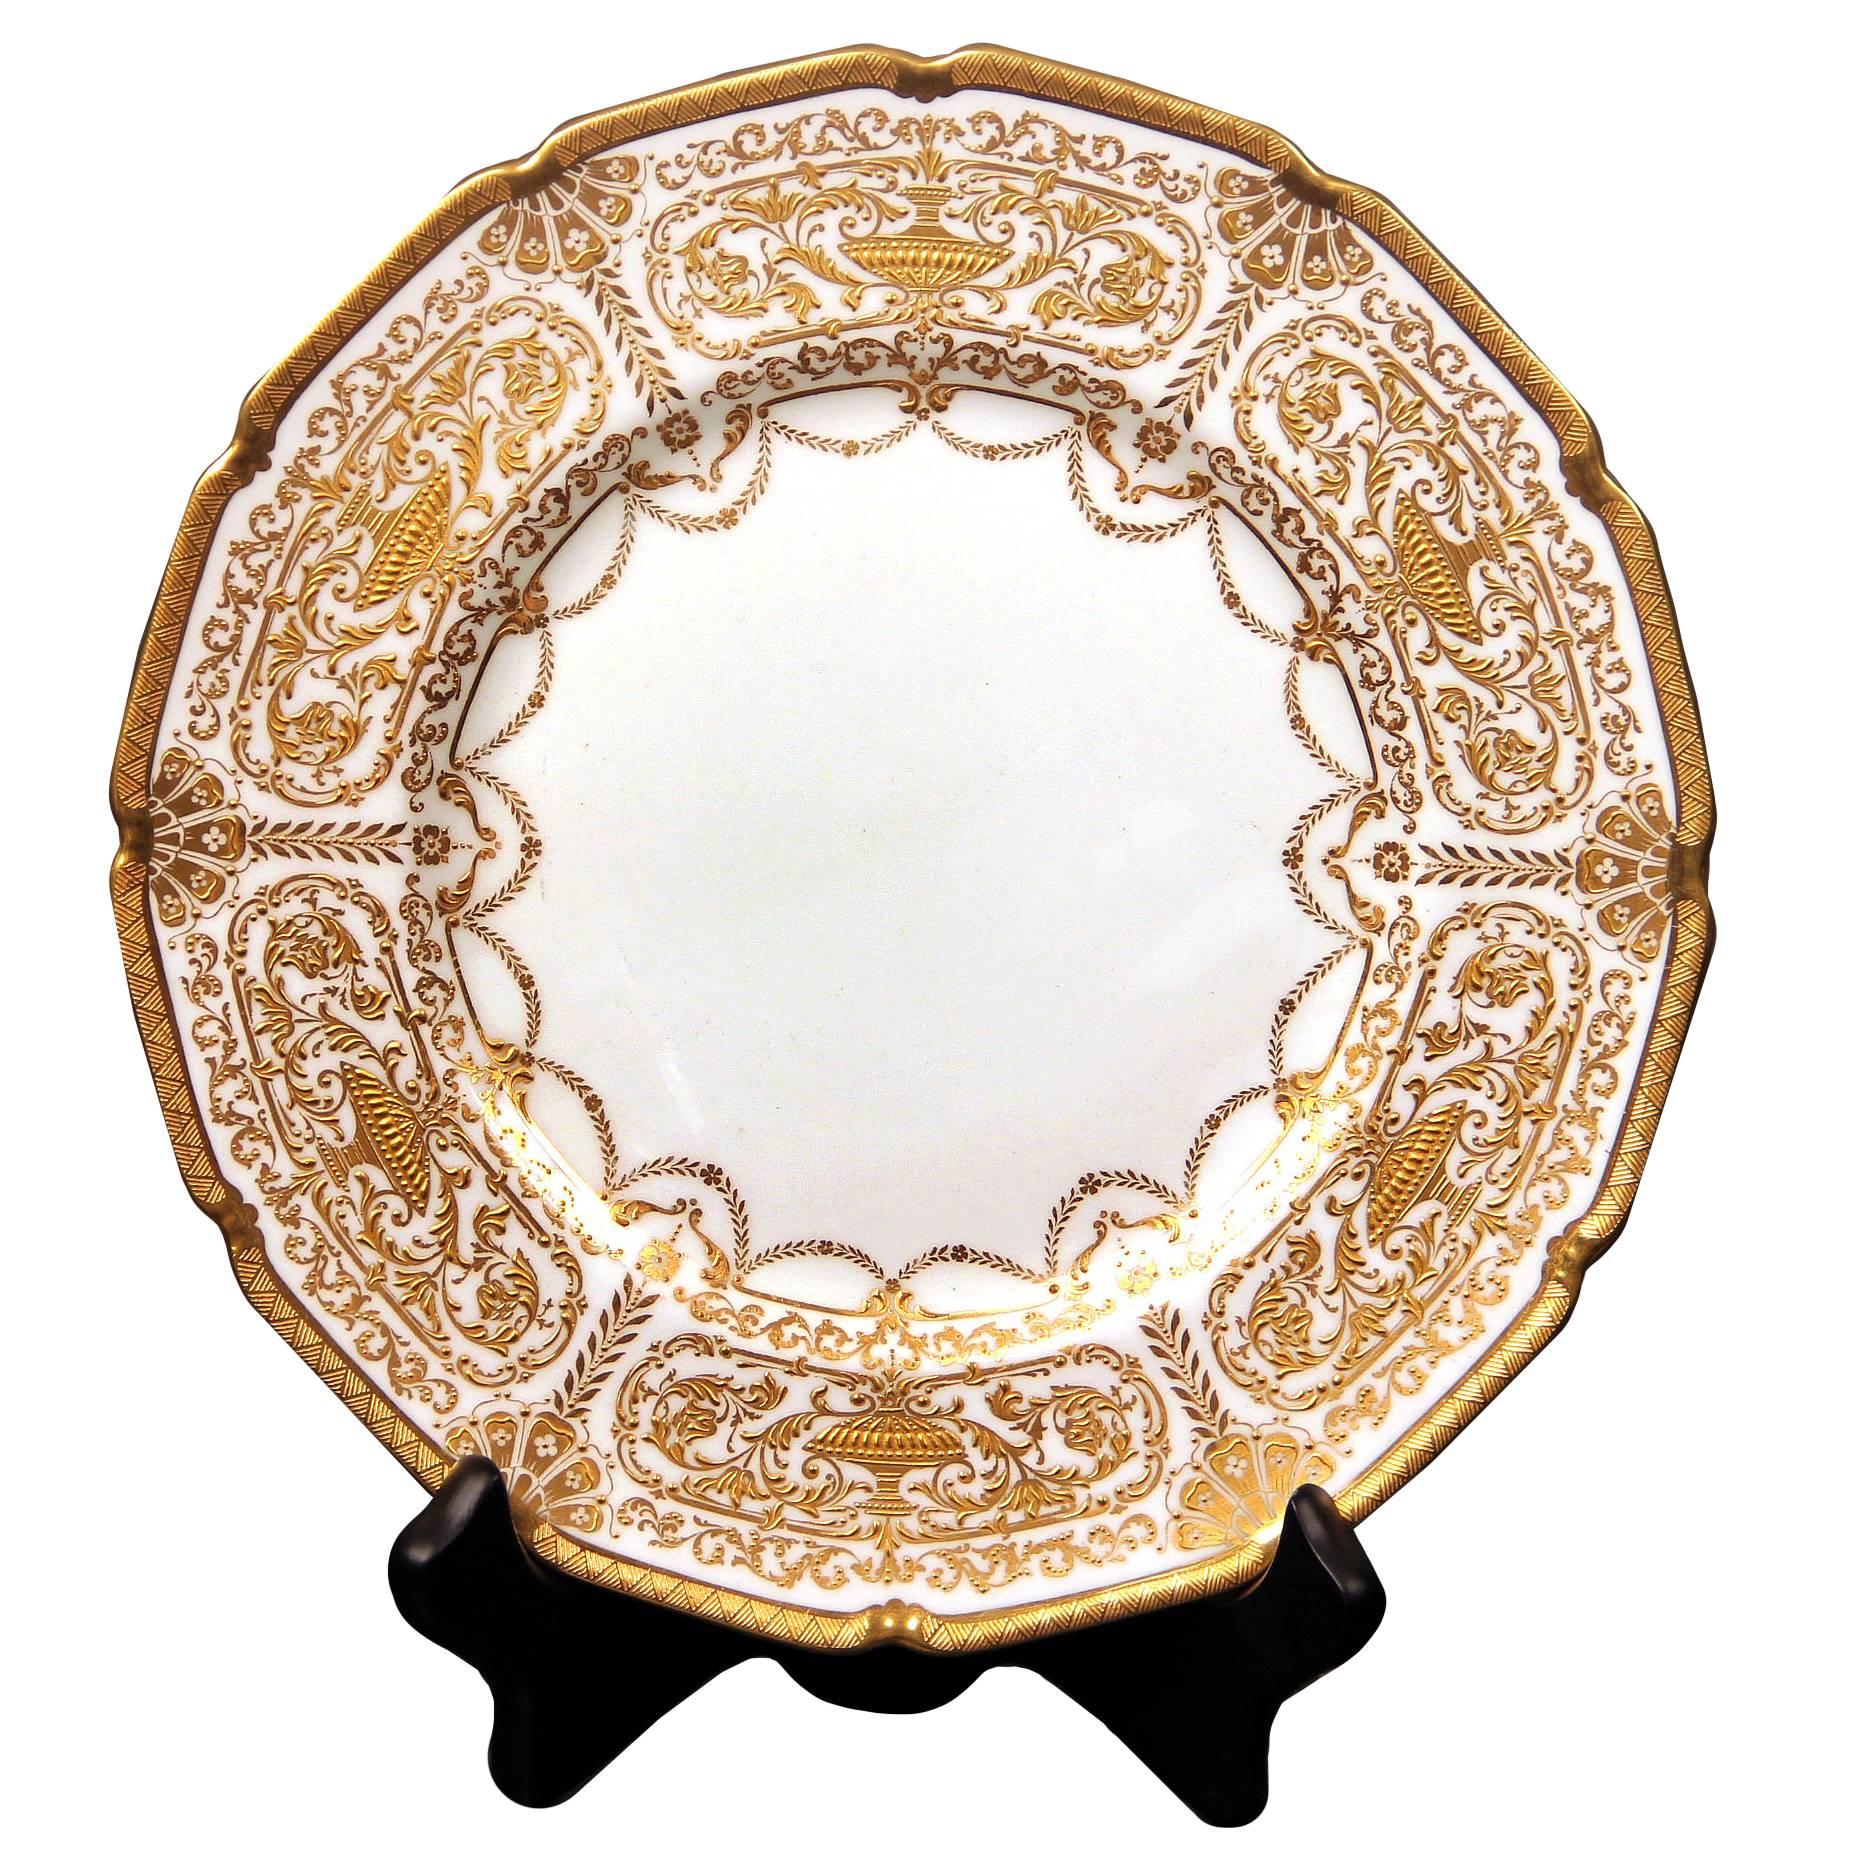 Un bel ensemble de 12 assiettes Royal Doulton anglaises du début du 20e siècle.

Finement décorée avec de l'or en relief.

Estampillé Royal Doulton England au dos des assiettes.